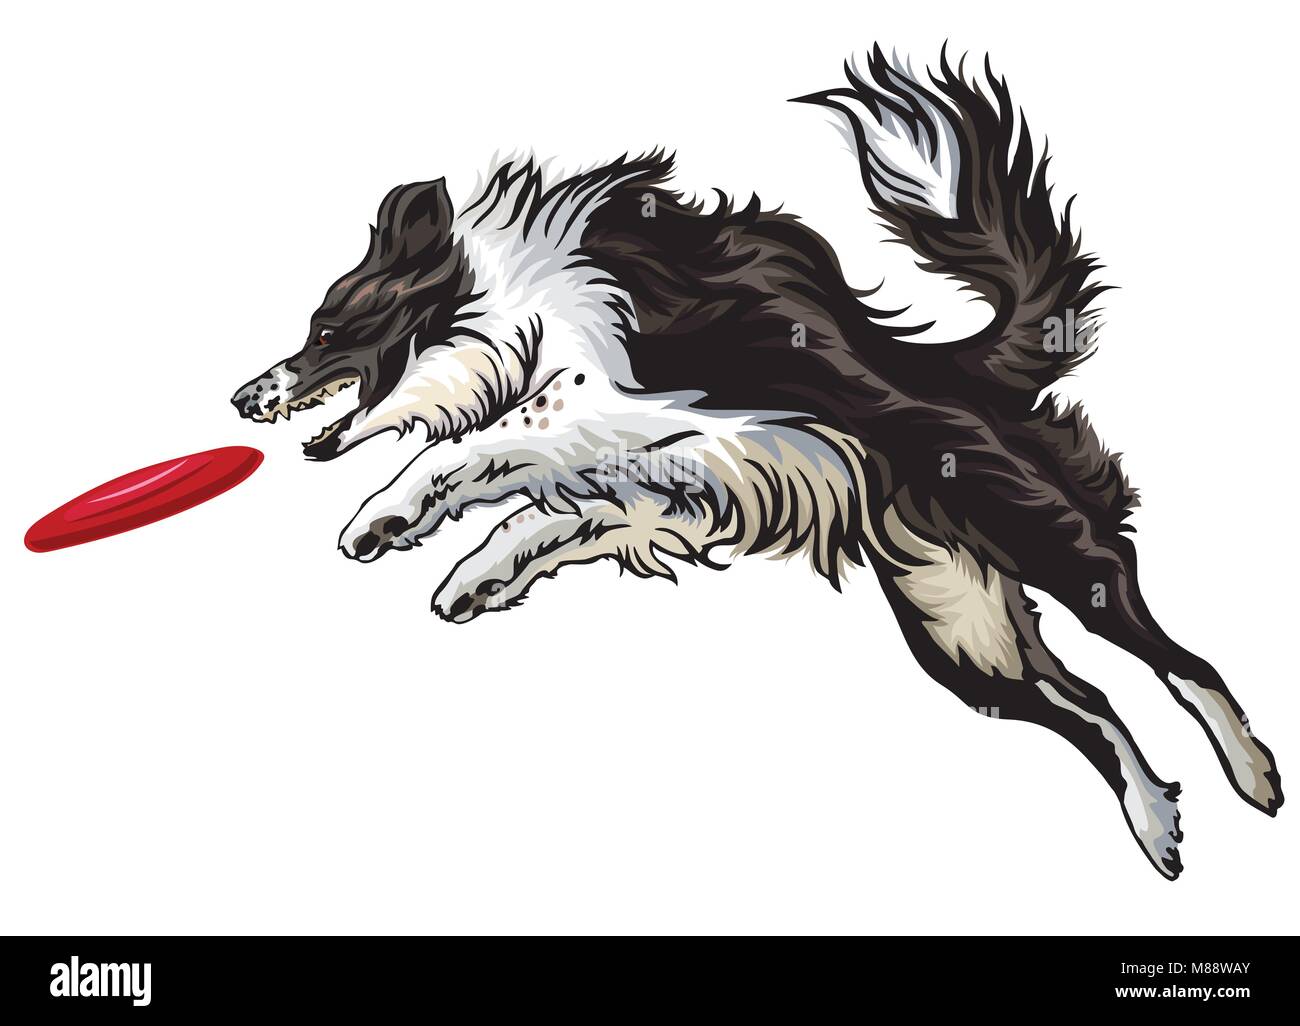 Vektor bunte Illustration mit Hund (Border Collie) auf weißem Hintergrund. Flauschigen schwarzen und weißen Hund im Profil anzeigen Springen und Fang re Stock Vektor